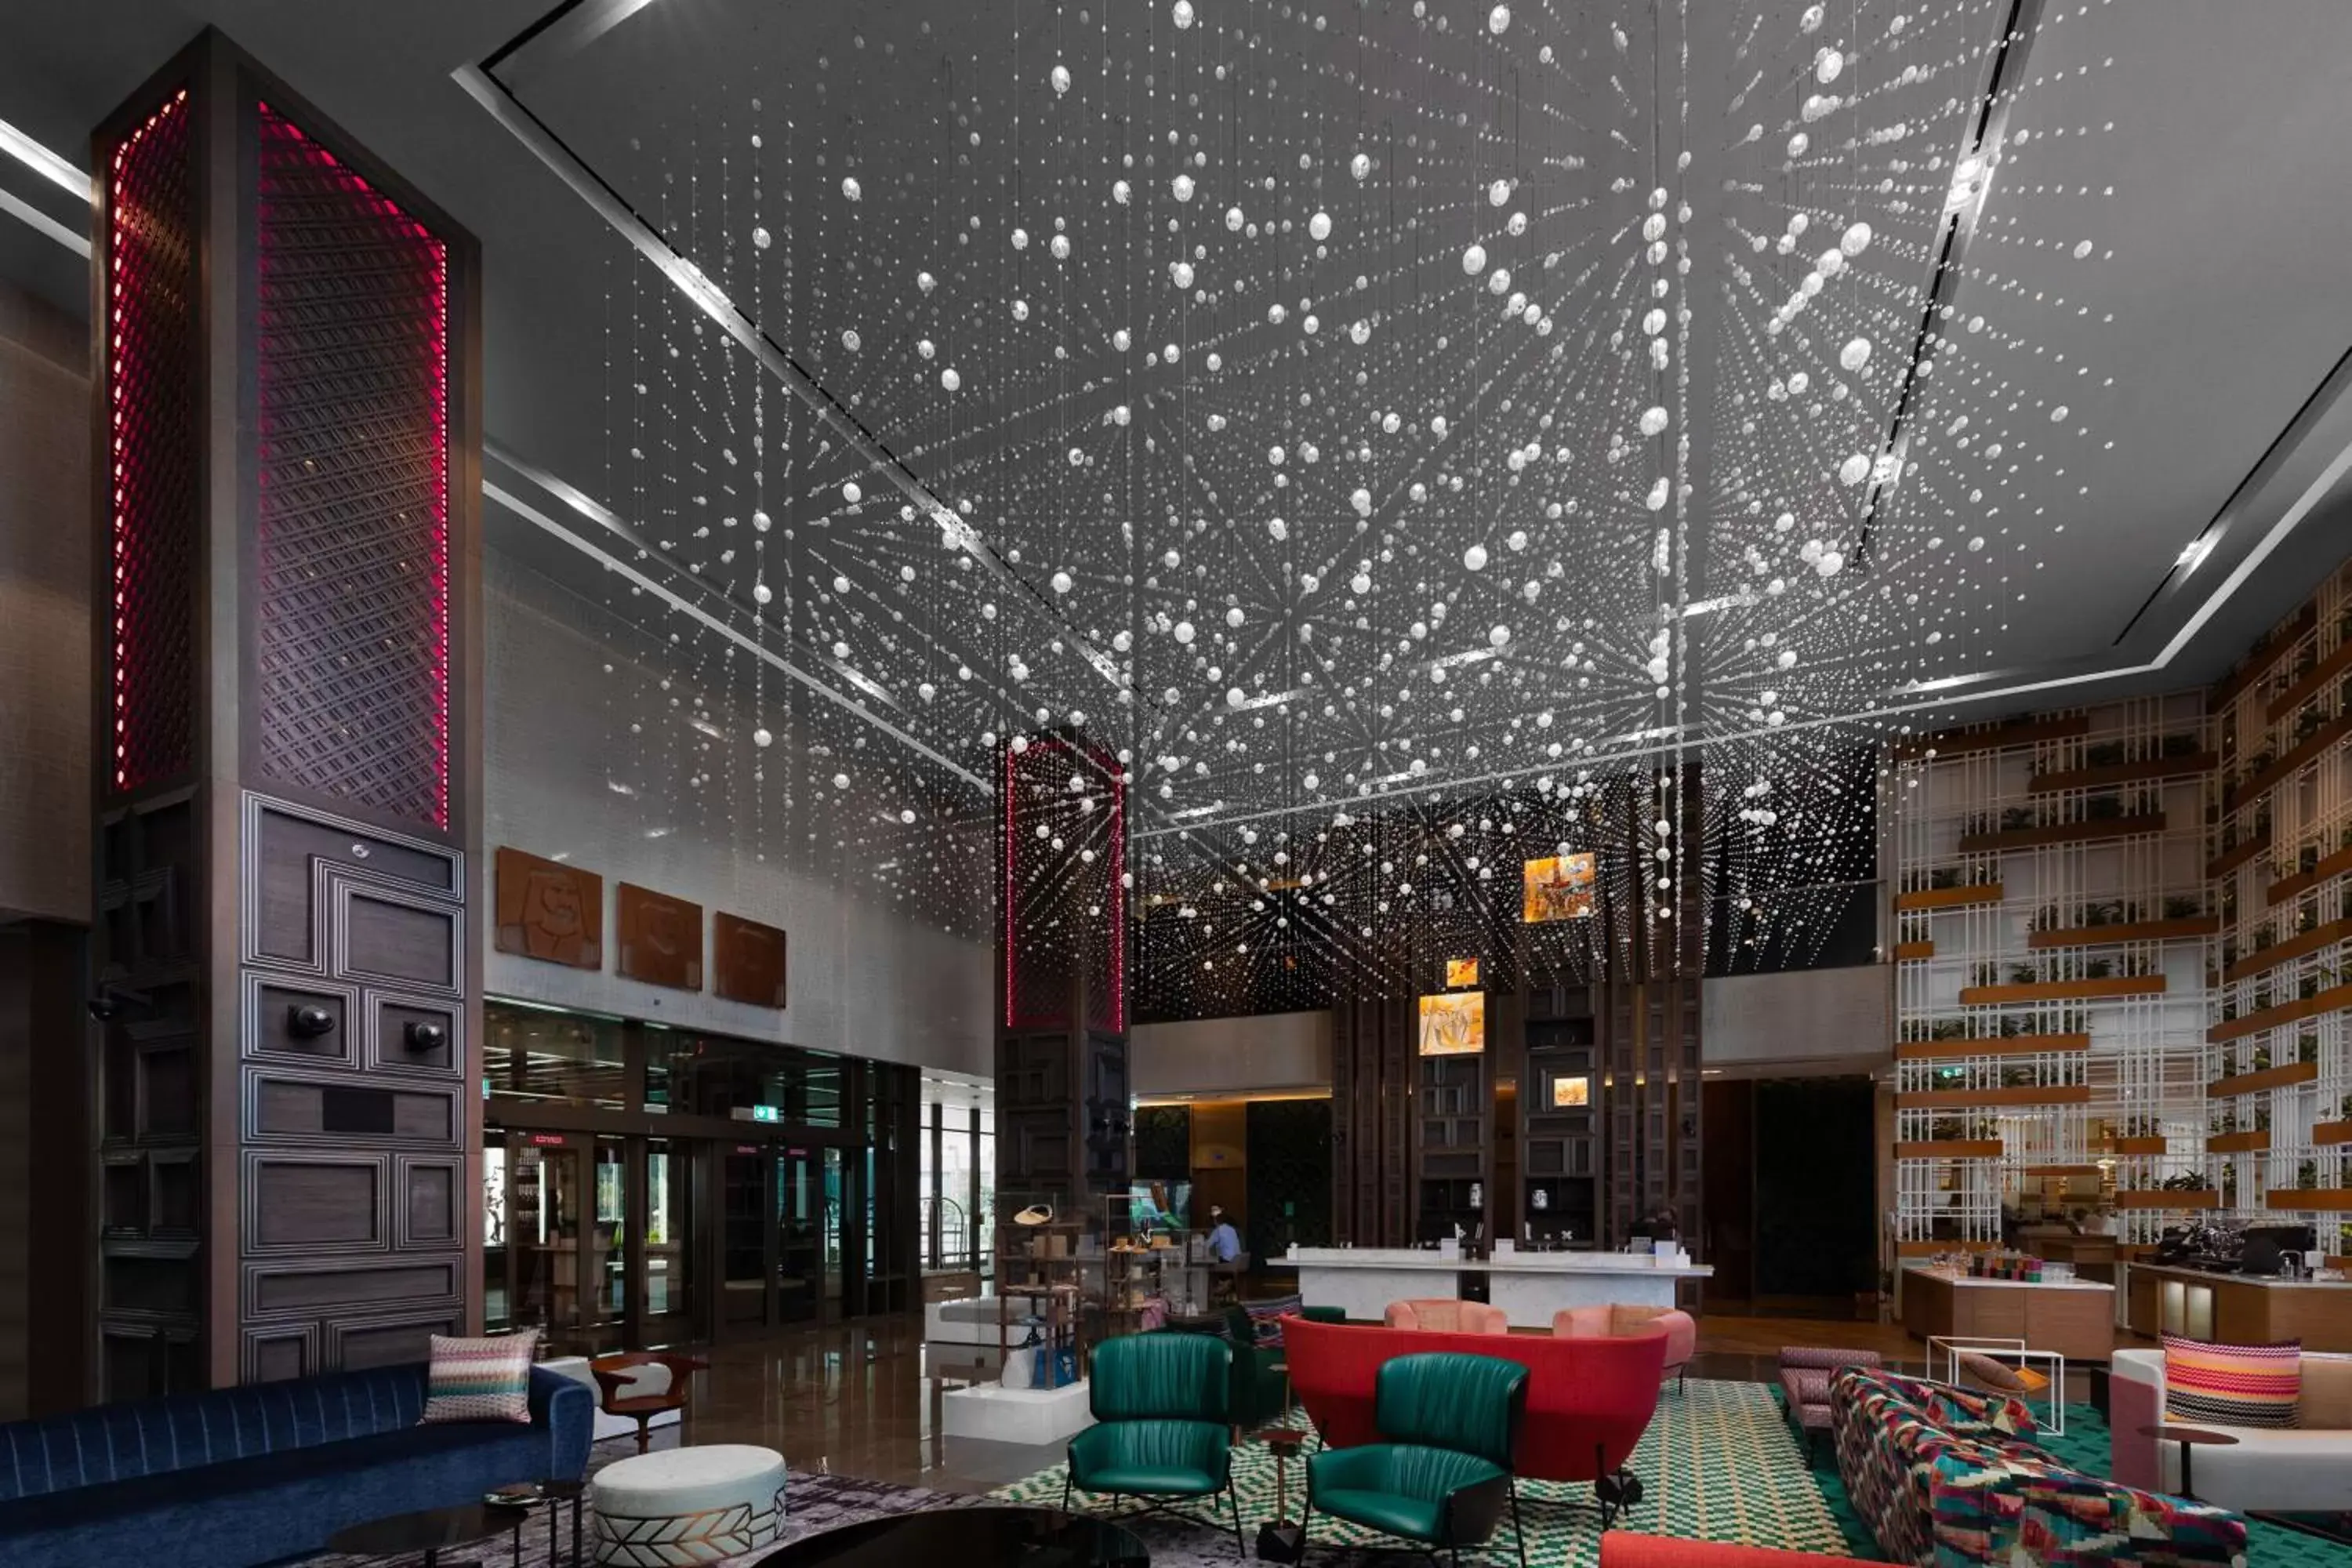 Lobby or reception in Hyatt Centric Jumeirah Dubai